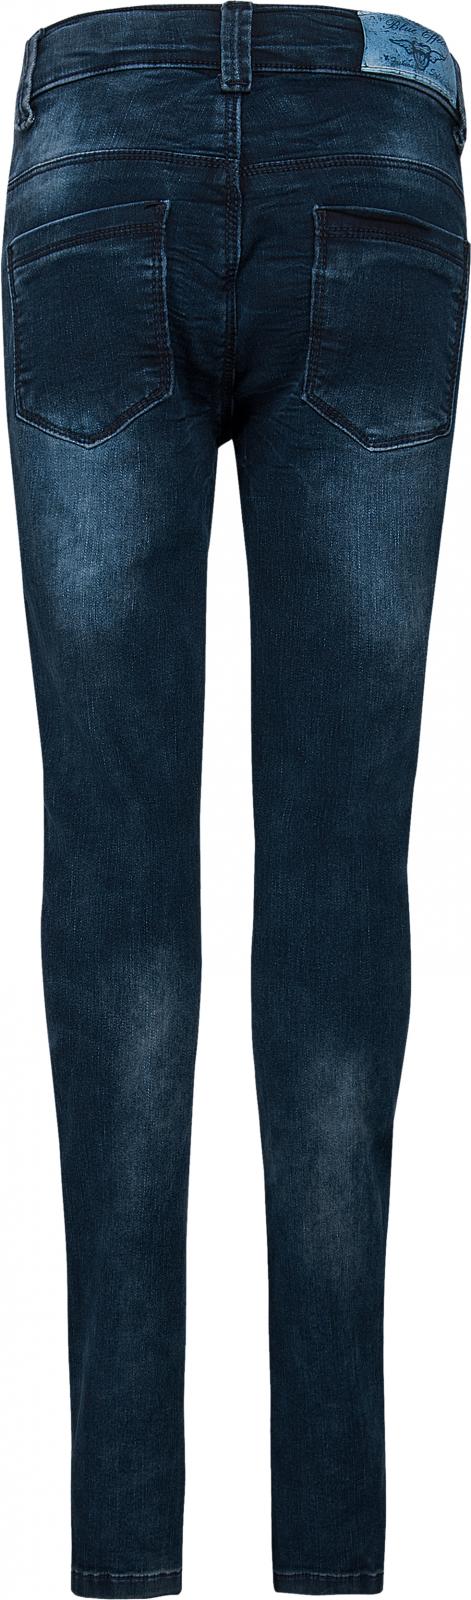 Mädchen 1171-0126 Girls Jeans Blue Denim